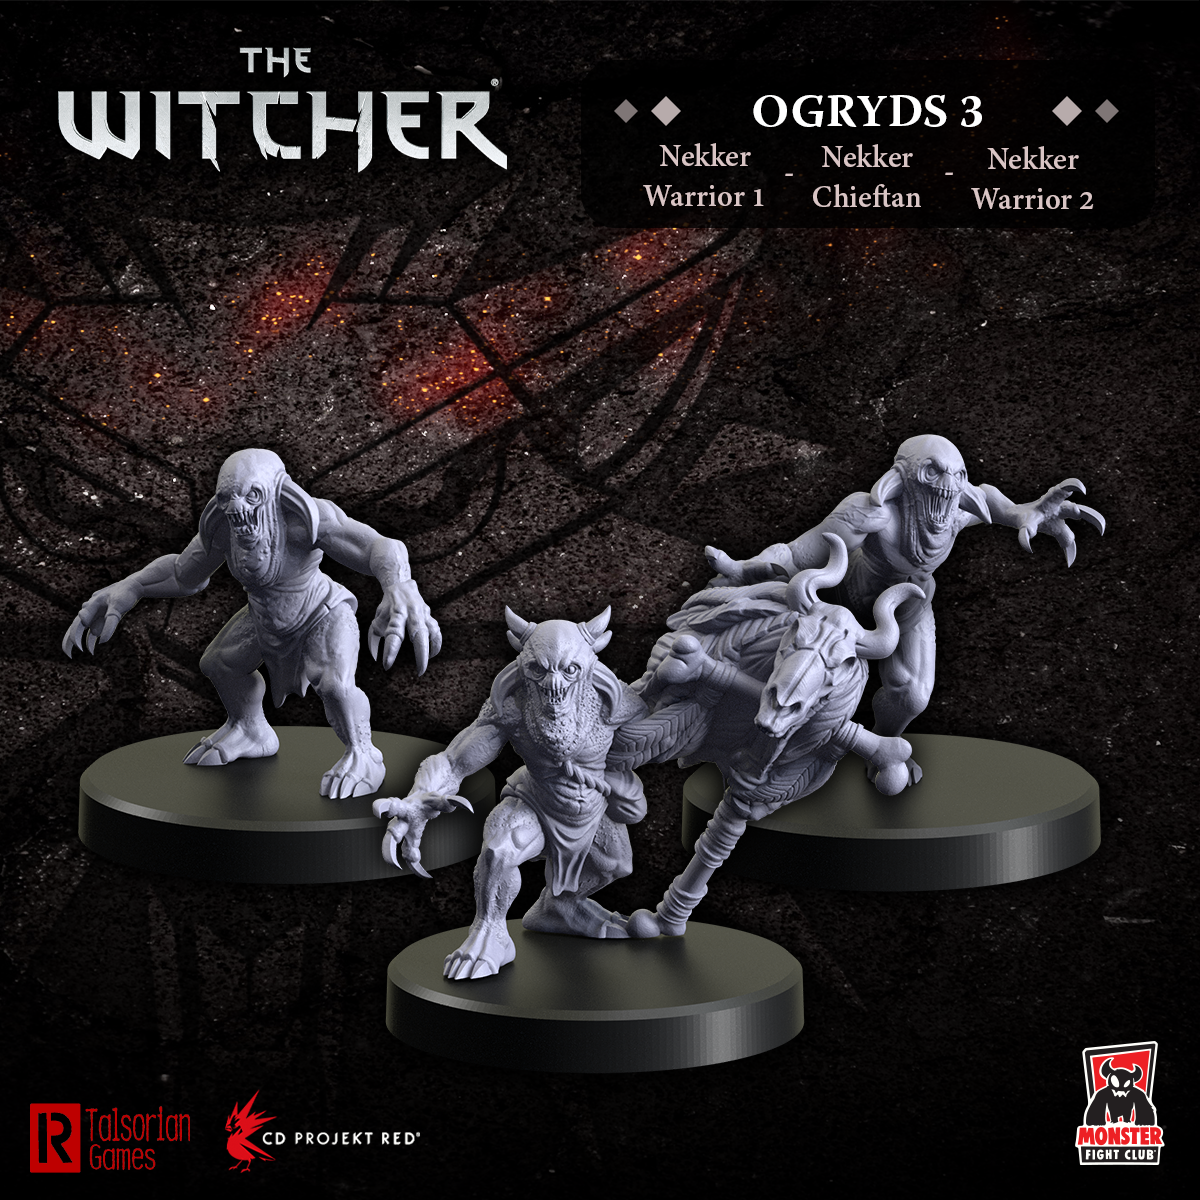 The Witcher - Ogryds 3: Nekker Warriors